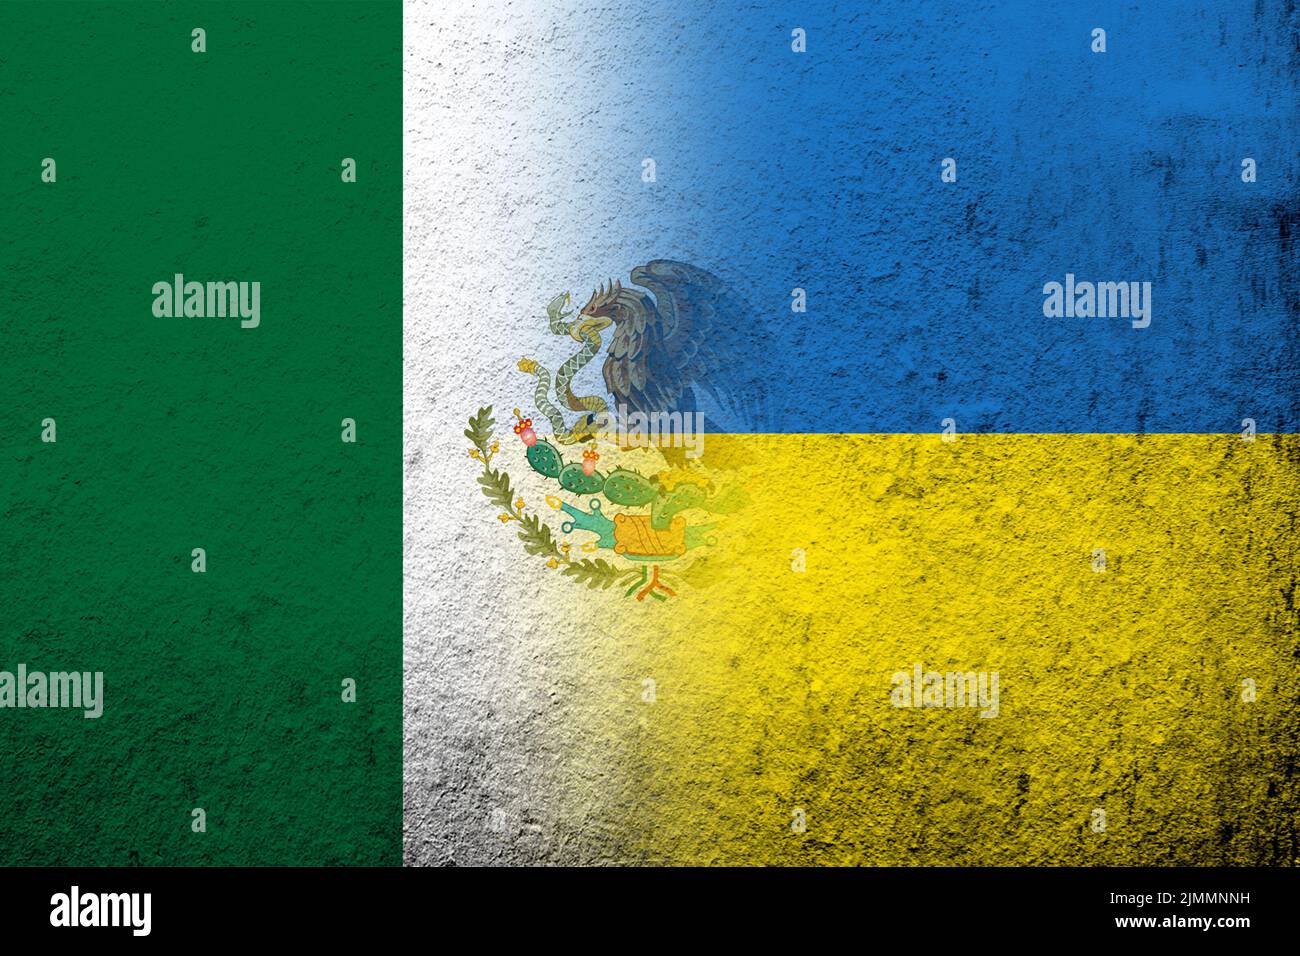 Estados Unidos Mexicanos Bandera Nacional con Bandera Nacional de Ucrania. Fondo grunge Foto de stock